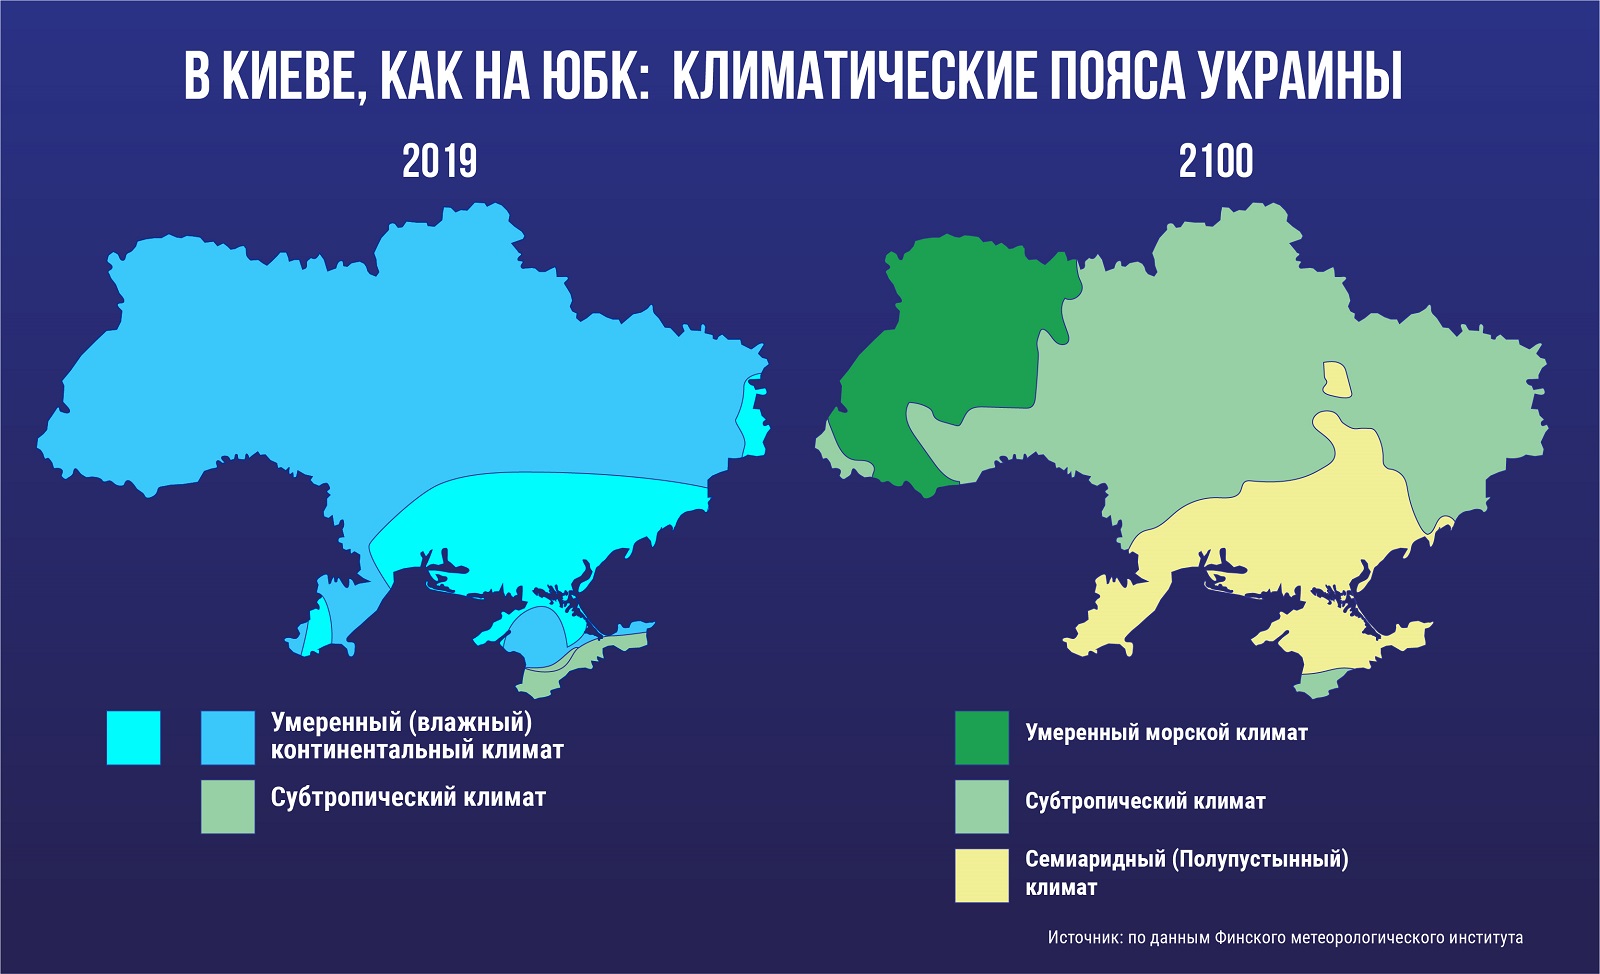 карта, климатические пояса Украины, глобальное потепление, изменение климата